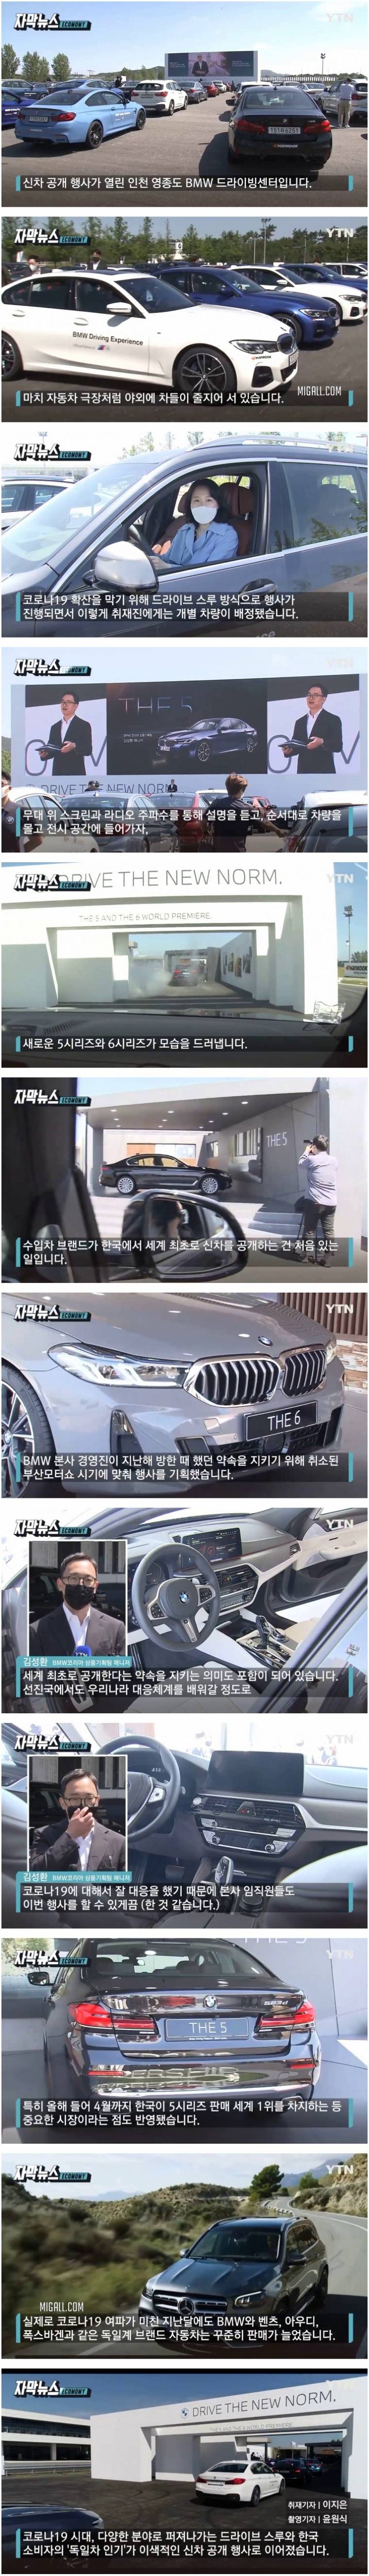 BMW가 신차를 한국에서 세계 최초 공개한 이유